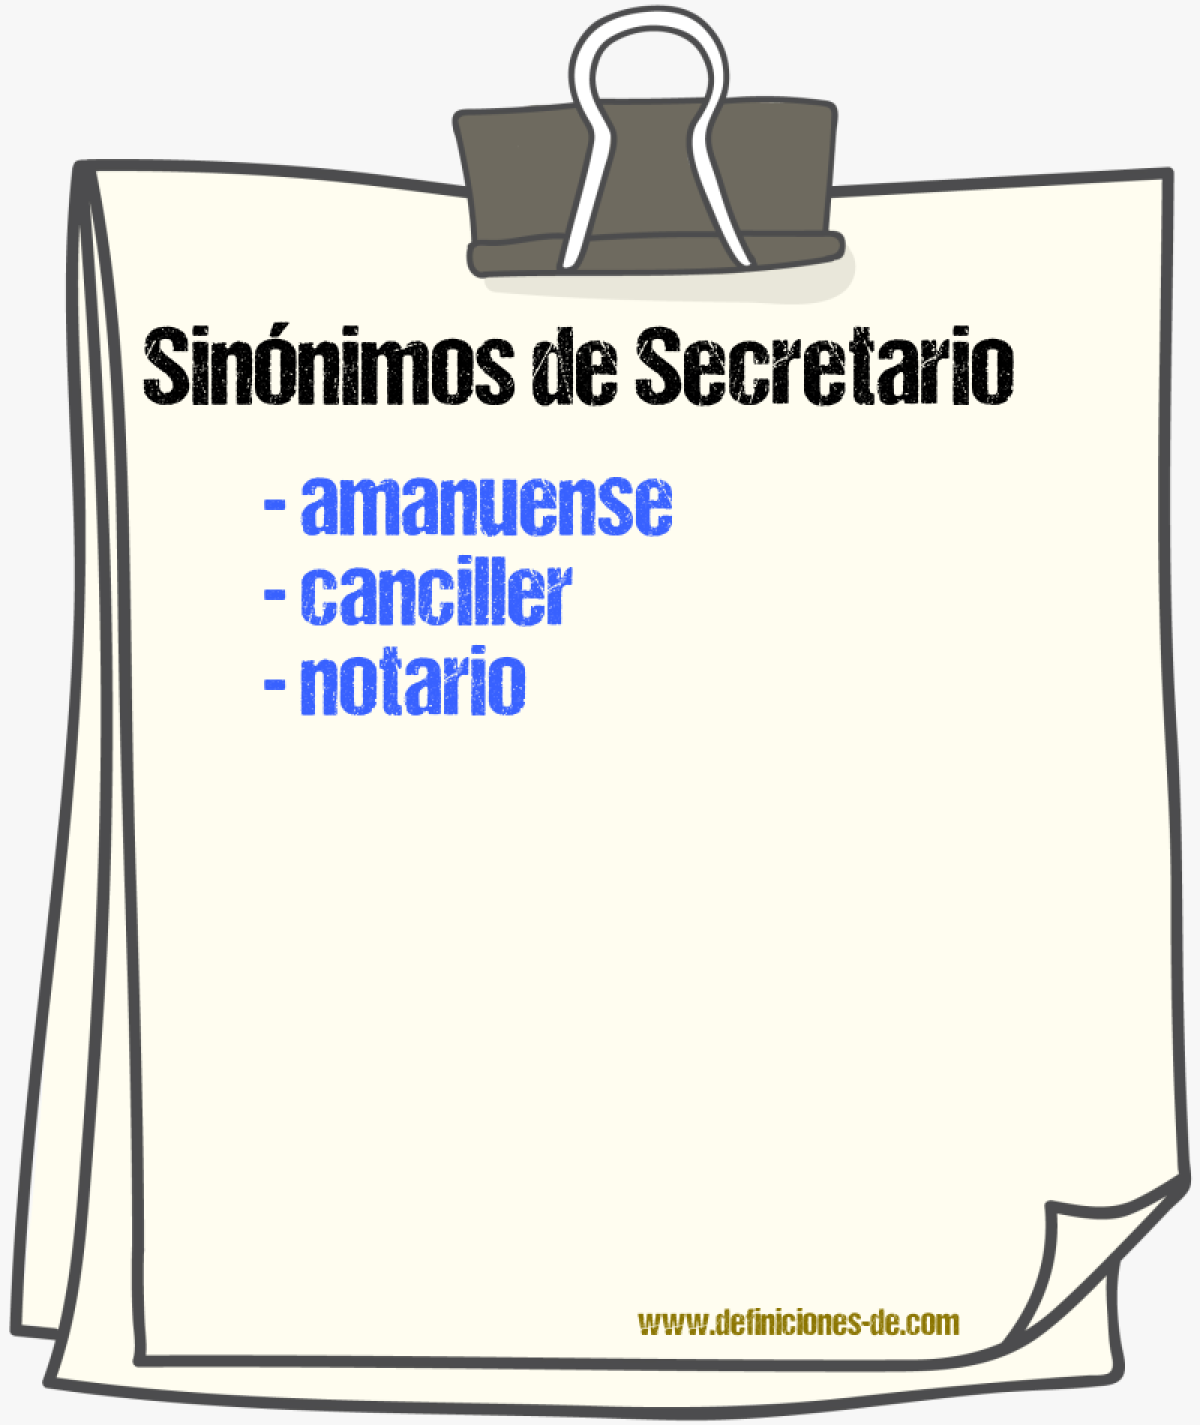 Sinónimos de secretario